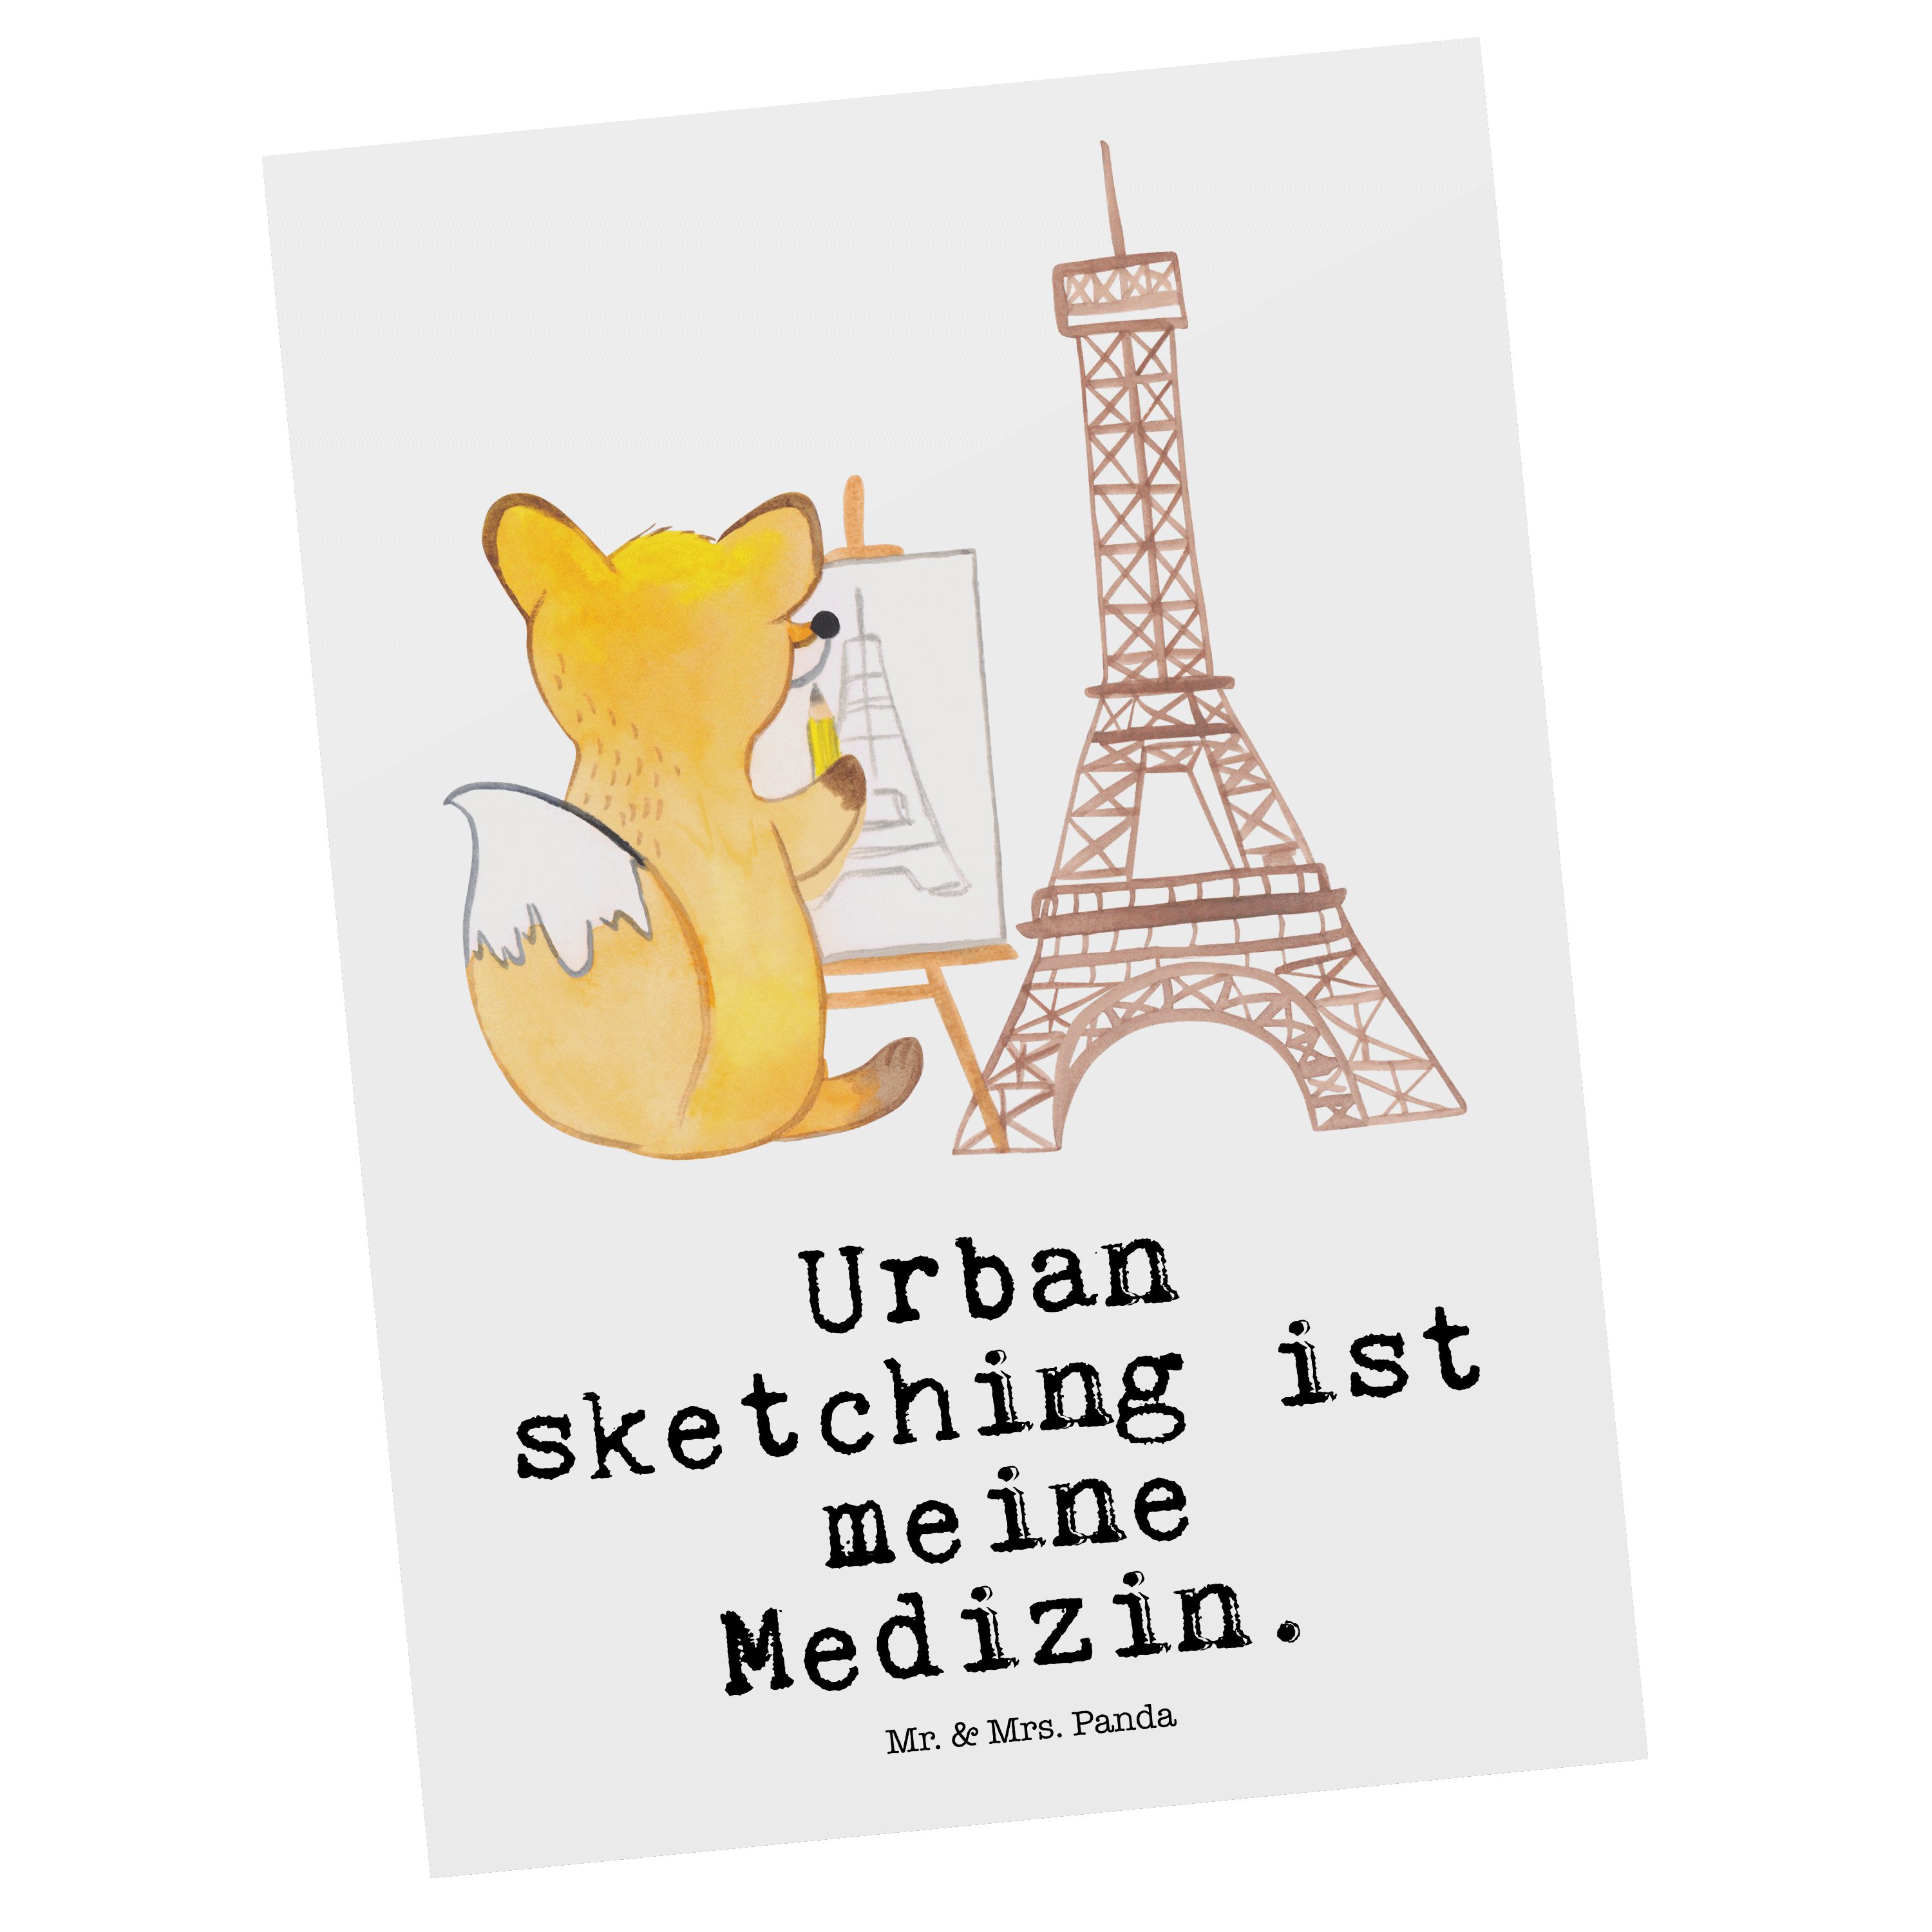 Mr. & Mrs. Panda Postkarte Fuchs Urban sketching Medizin - Weiß - Geschenk, Zeichenschule, Einla